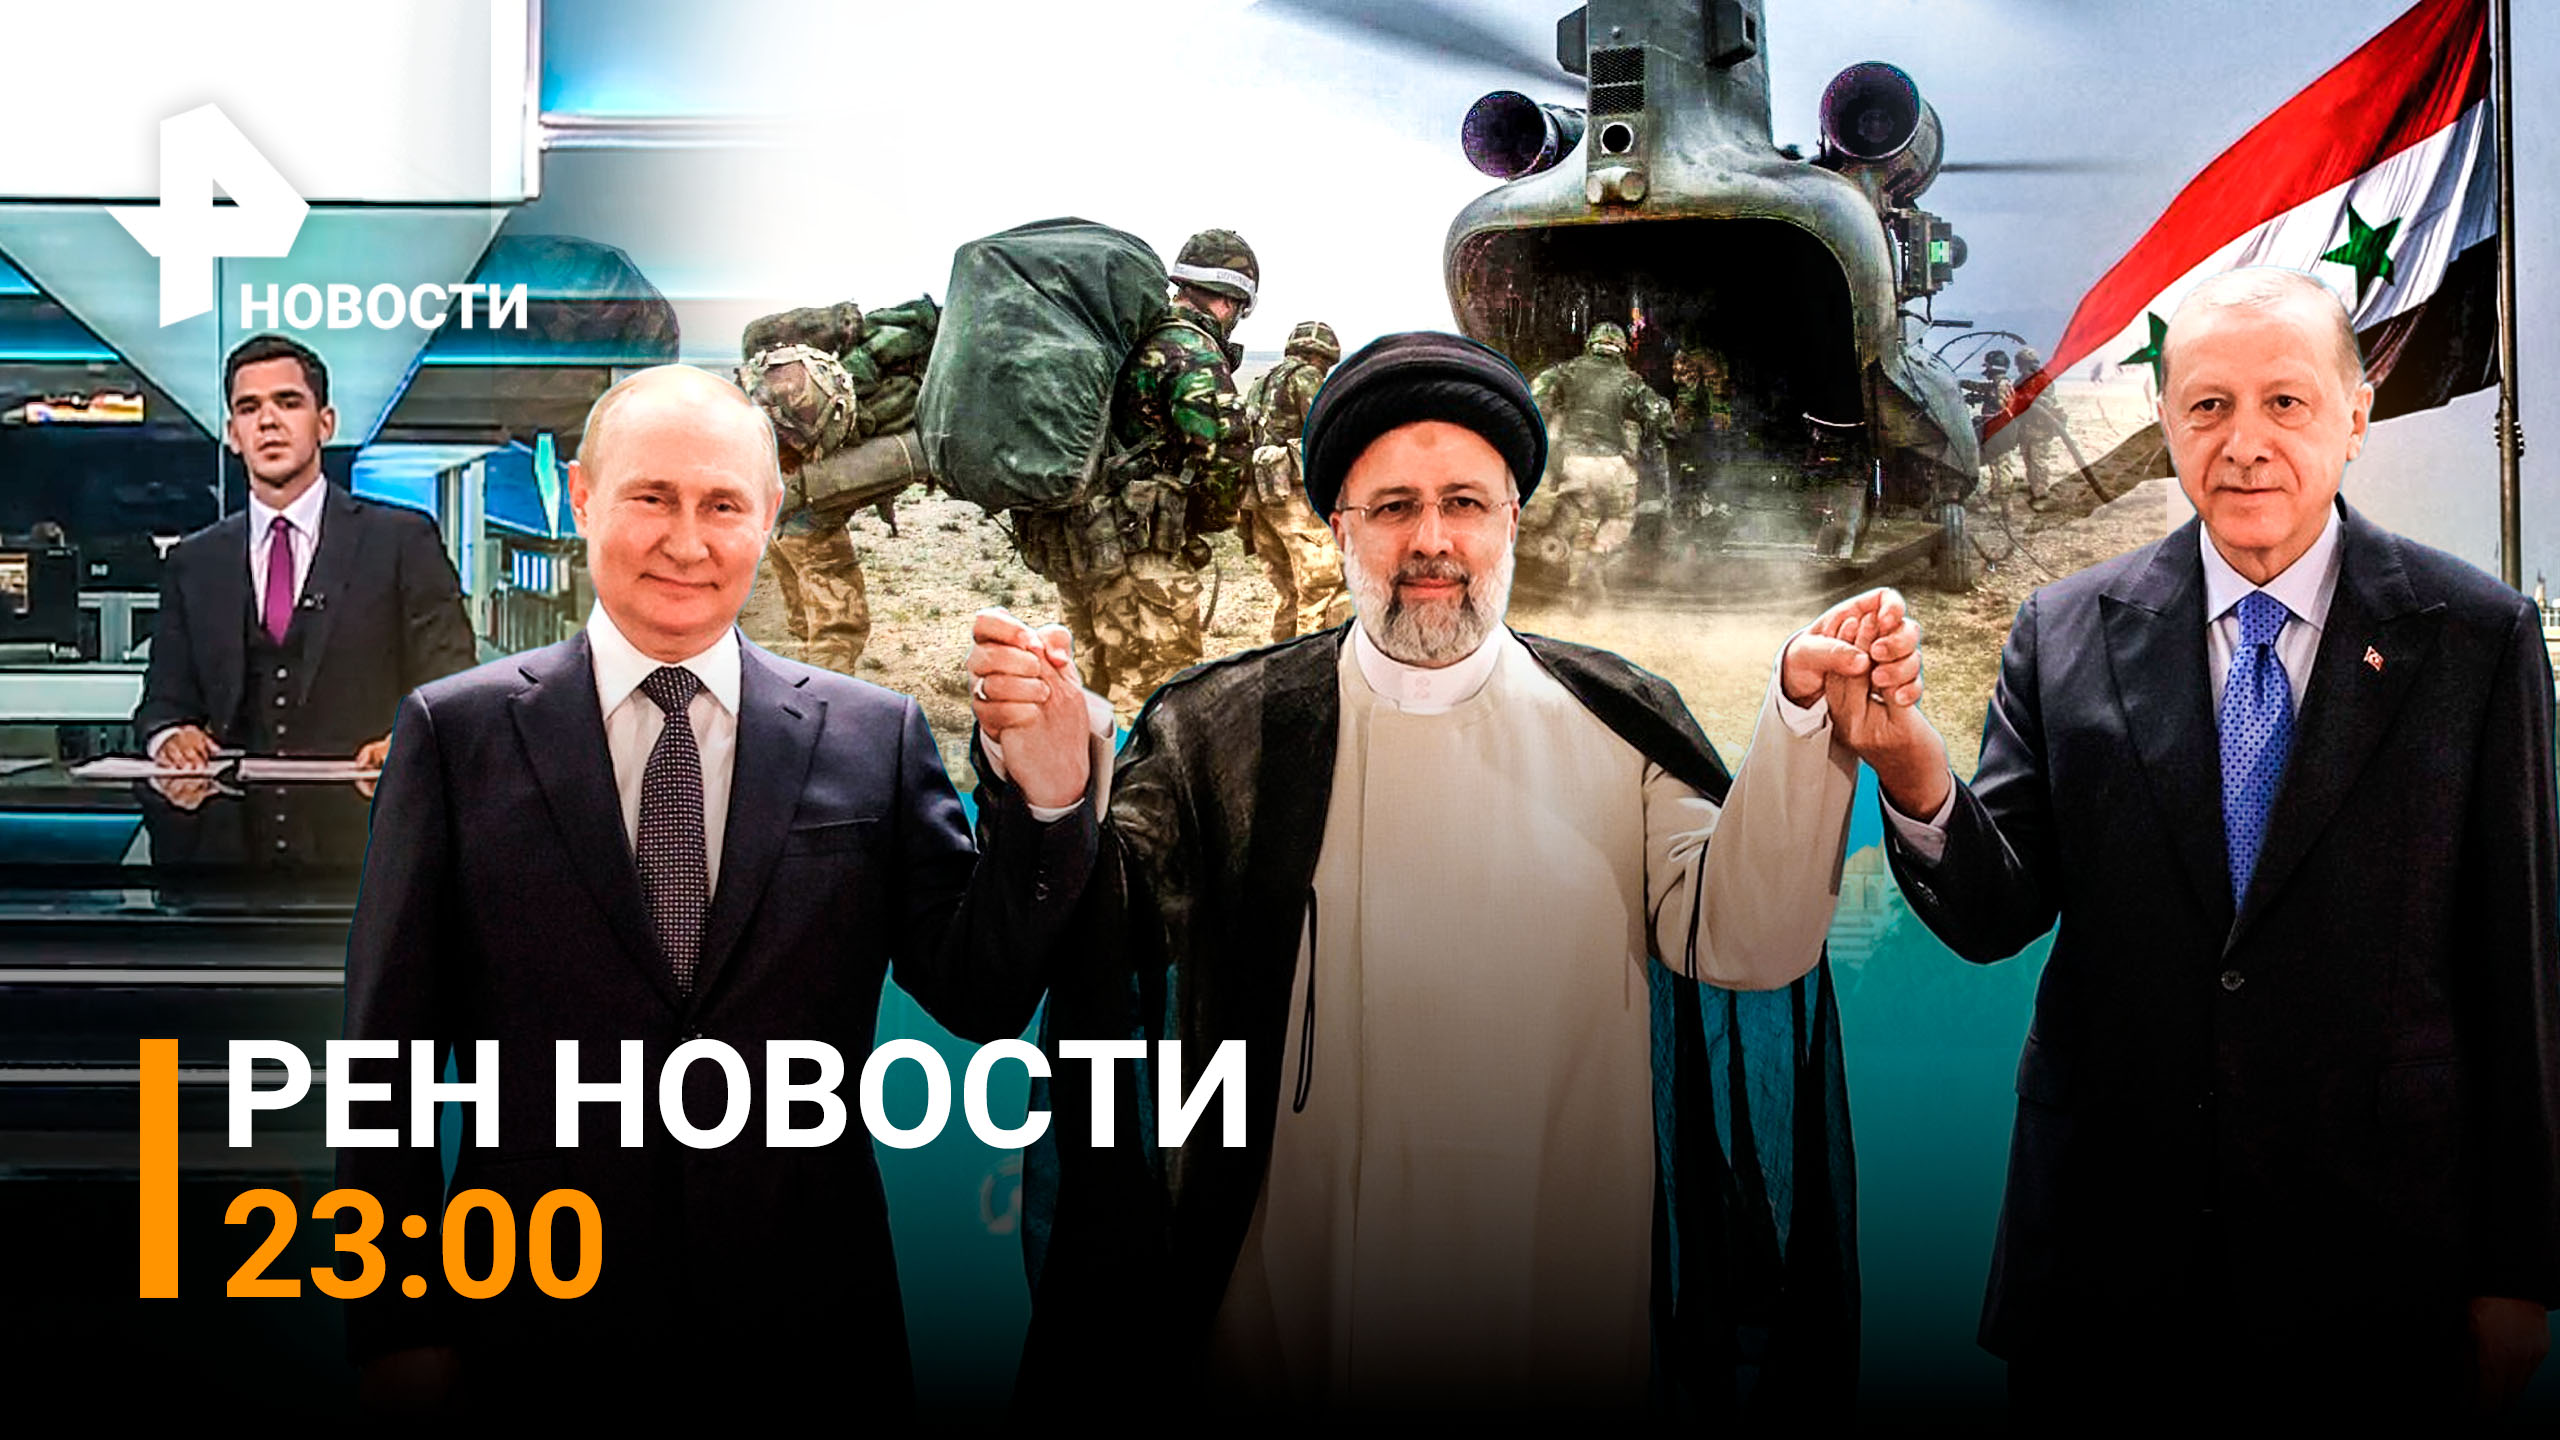 РЕН Новости 19 июля, 23:00 ⚡Уйти из Сирии придется США — Россия, Иран и Турция ставят точку